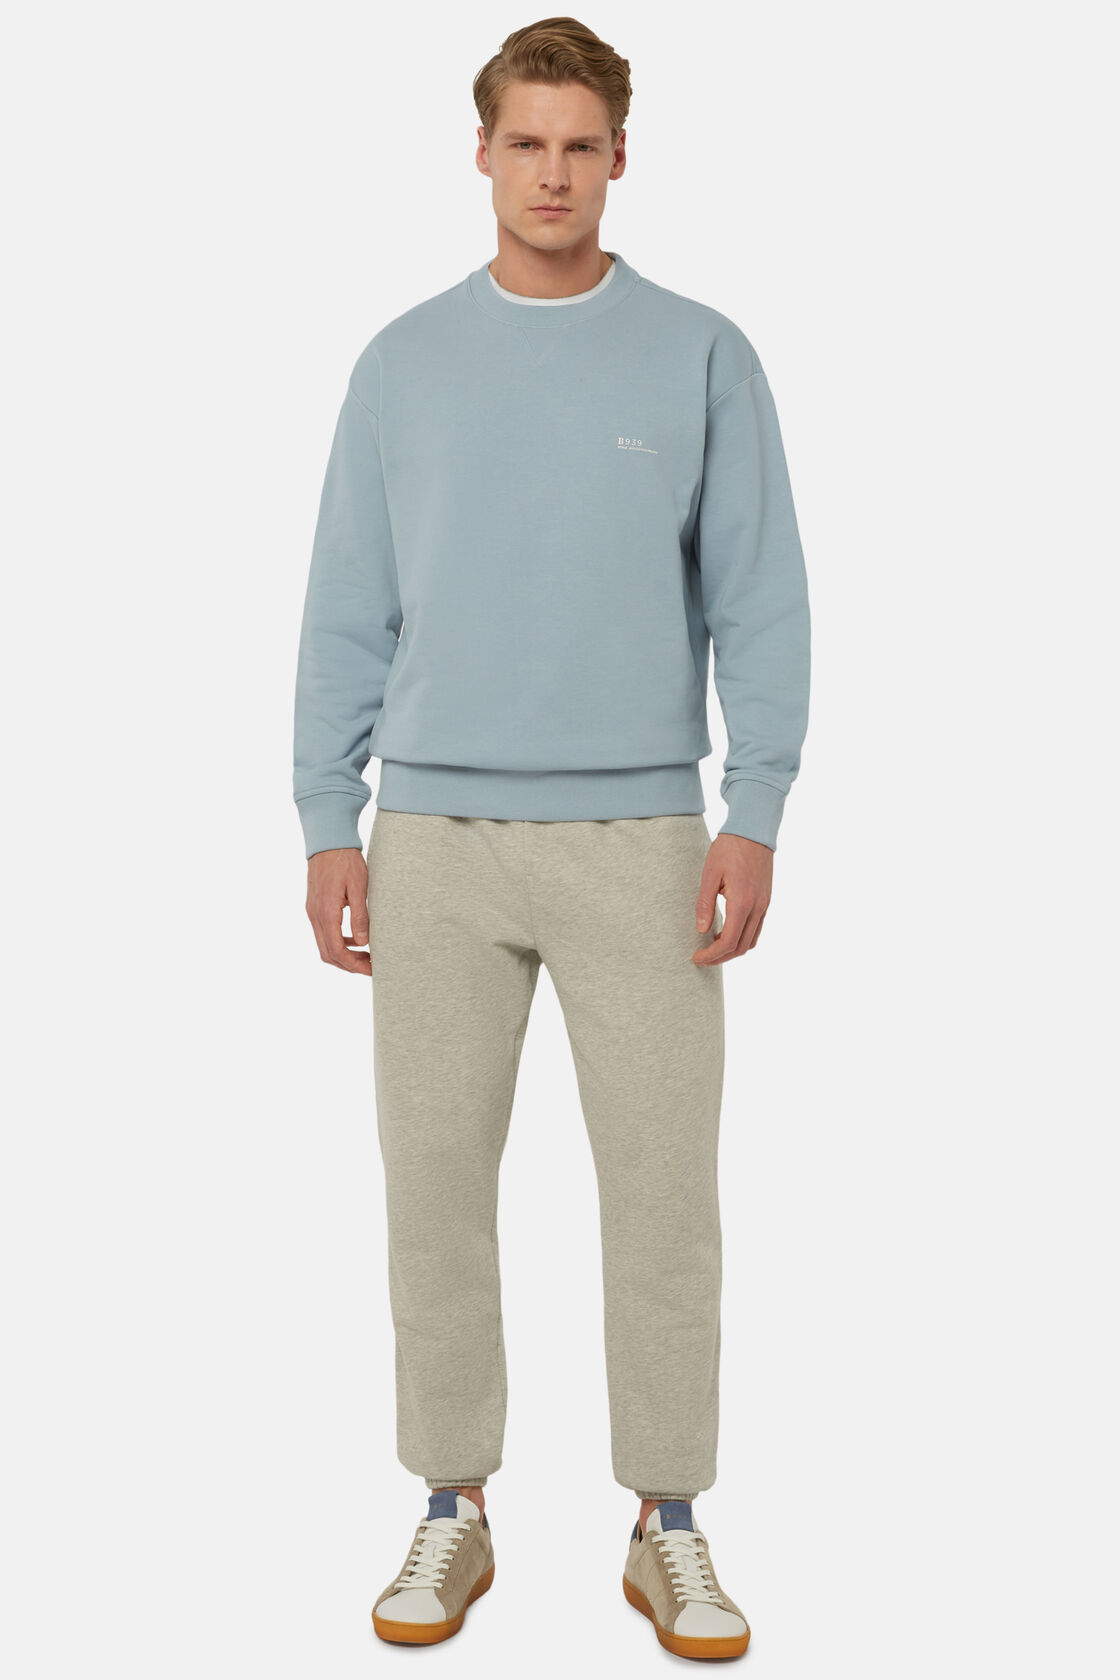 Sweatshirt Mit Rundhalsausschnitt Aus Recycelter Baumwollmischung, Hellblau, hi-res